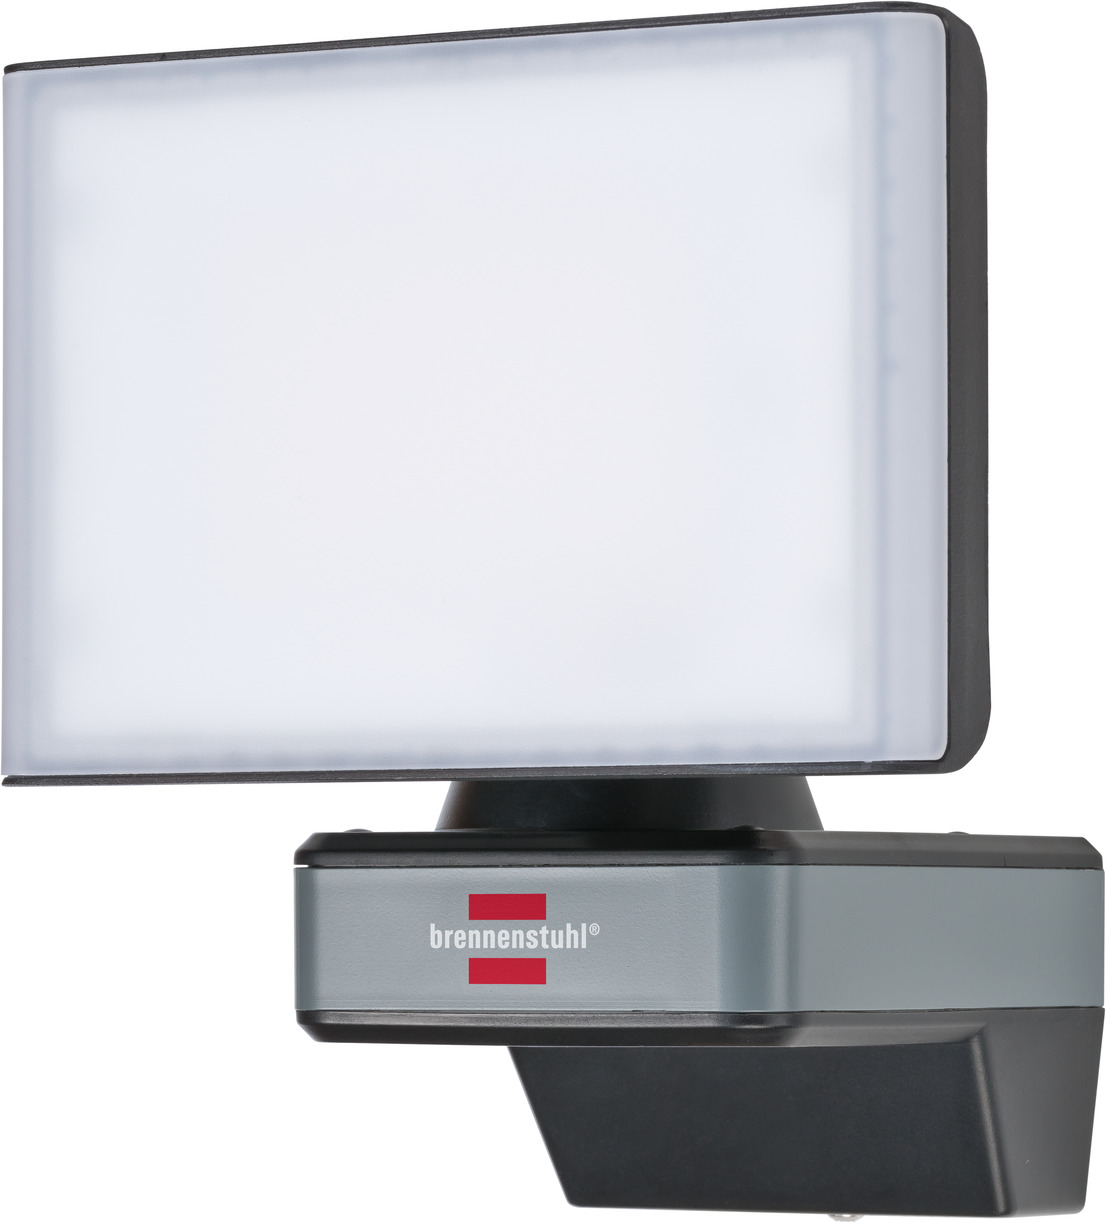 brennenstuhl®Connect LED WiFi Strahler WF 2050 2400lm, IP54 | brennenstuhl®